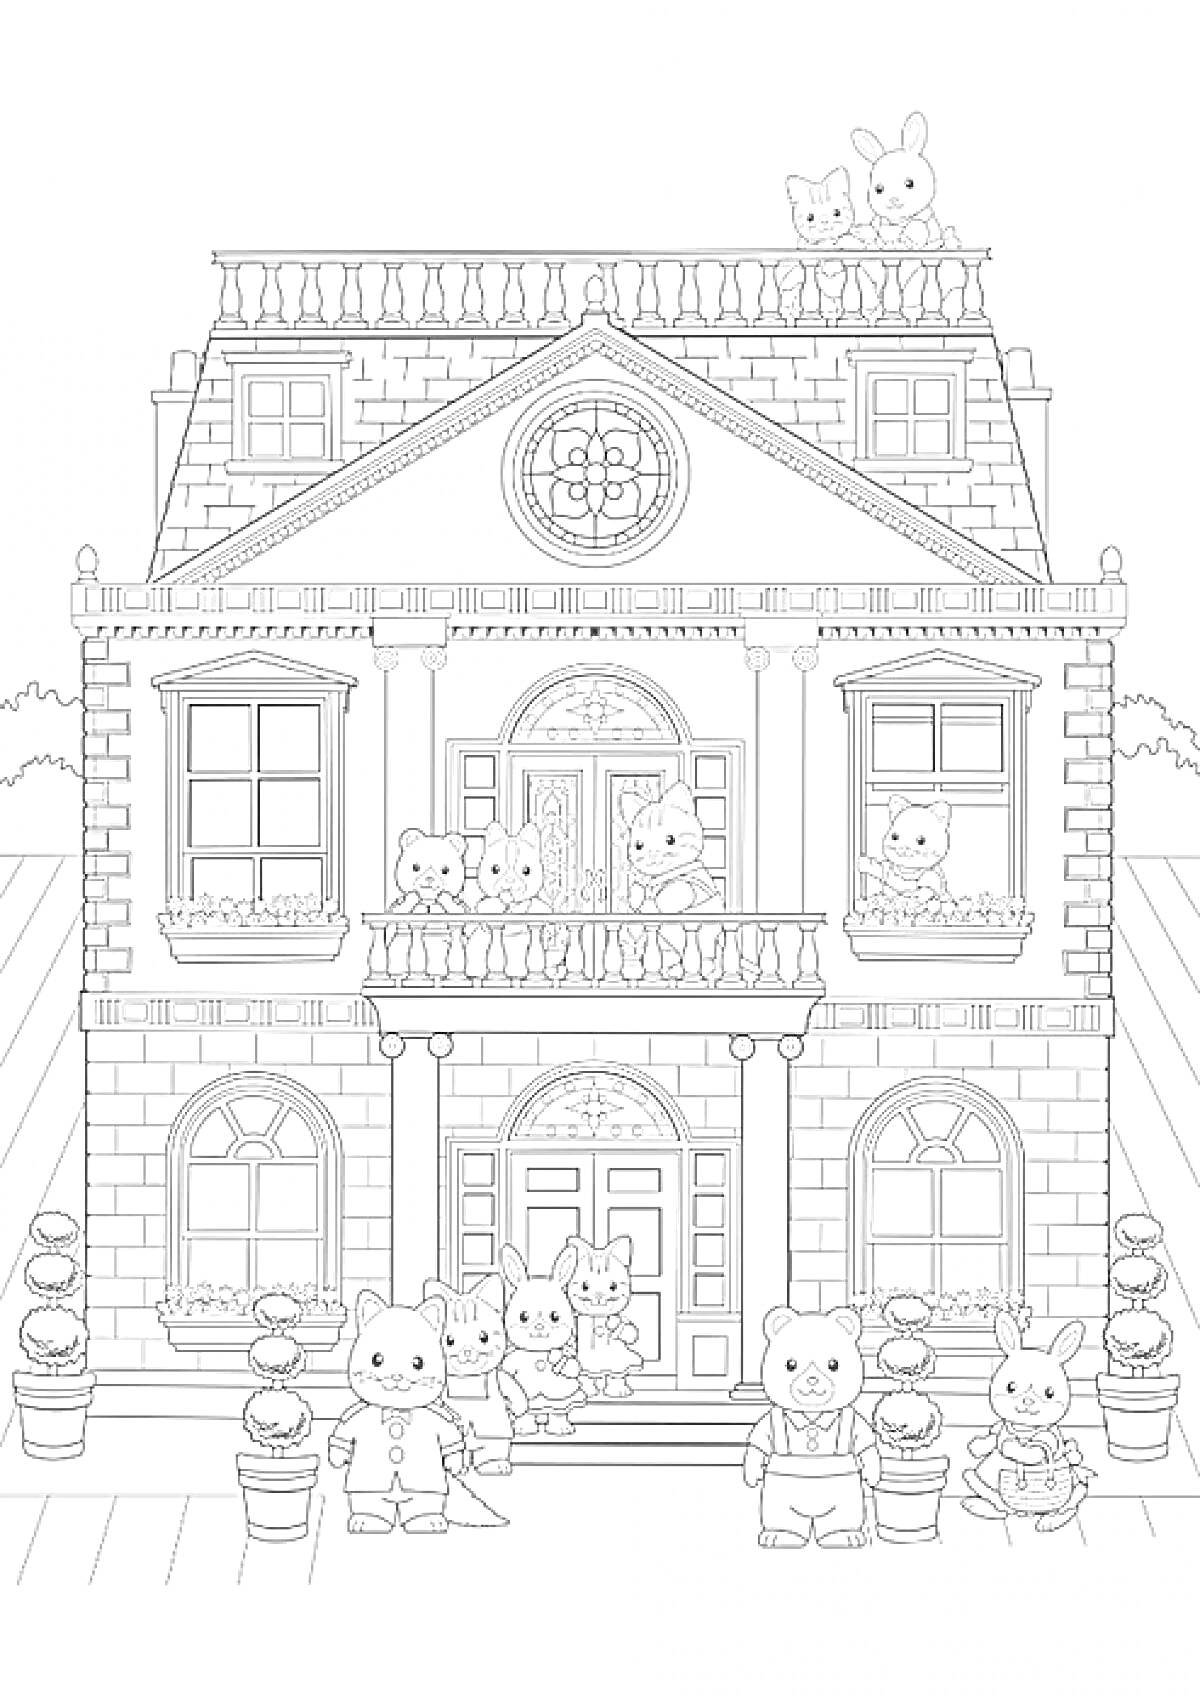 Раскраска Большой дом с множеством животных на разных этажах и балконах, горшки с цветами, две лестницы